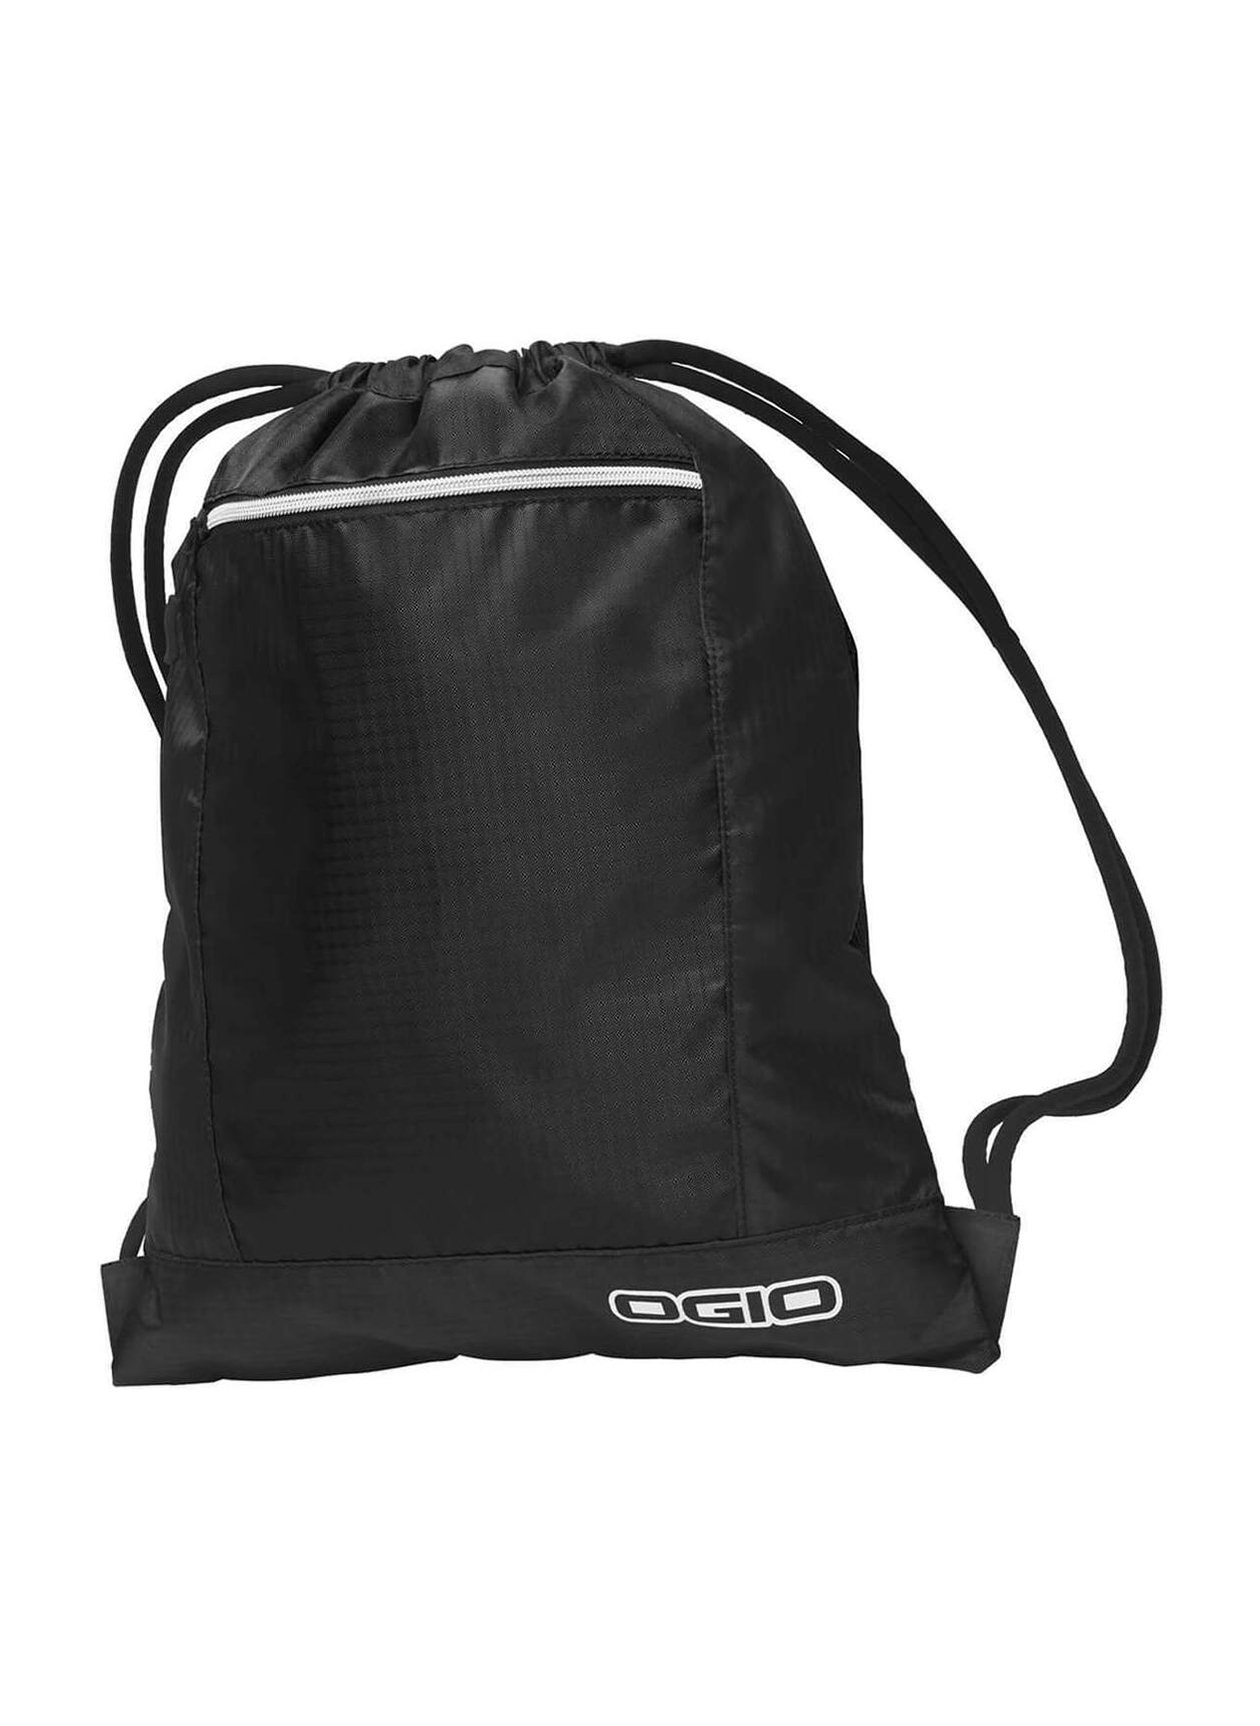 Atran Velo Pulse AVS Bag For Luggage Carrier Green - Bikable